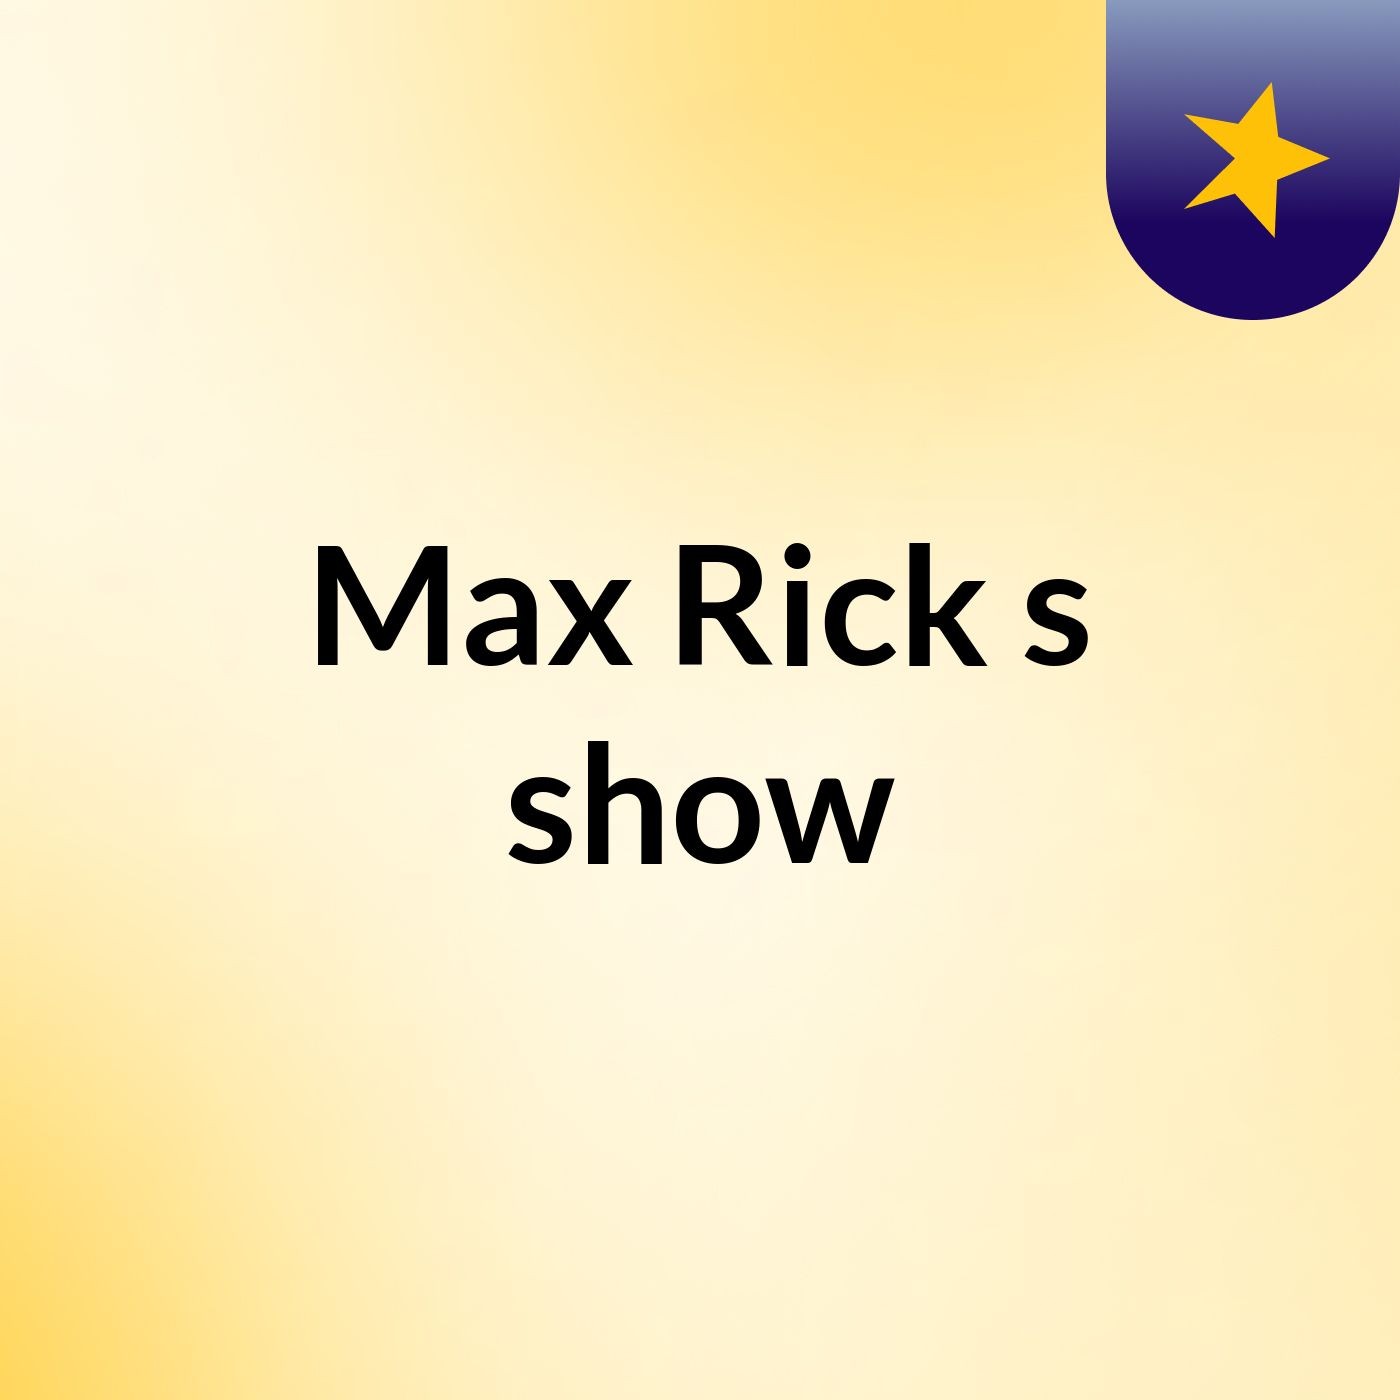 Max Rick's show